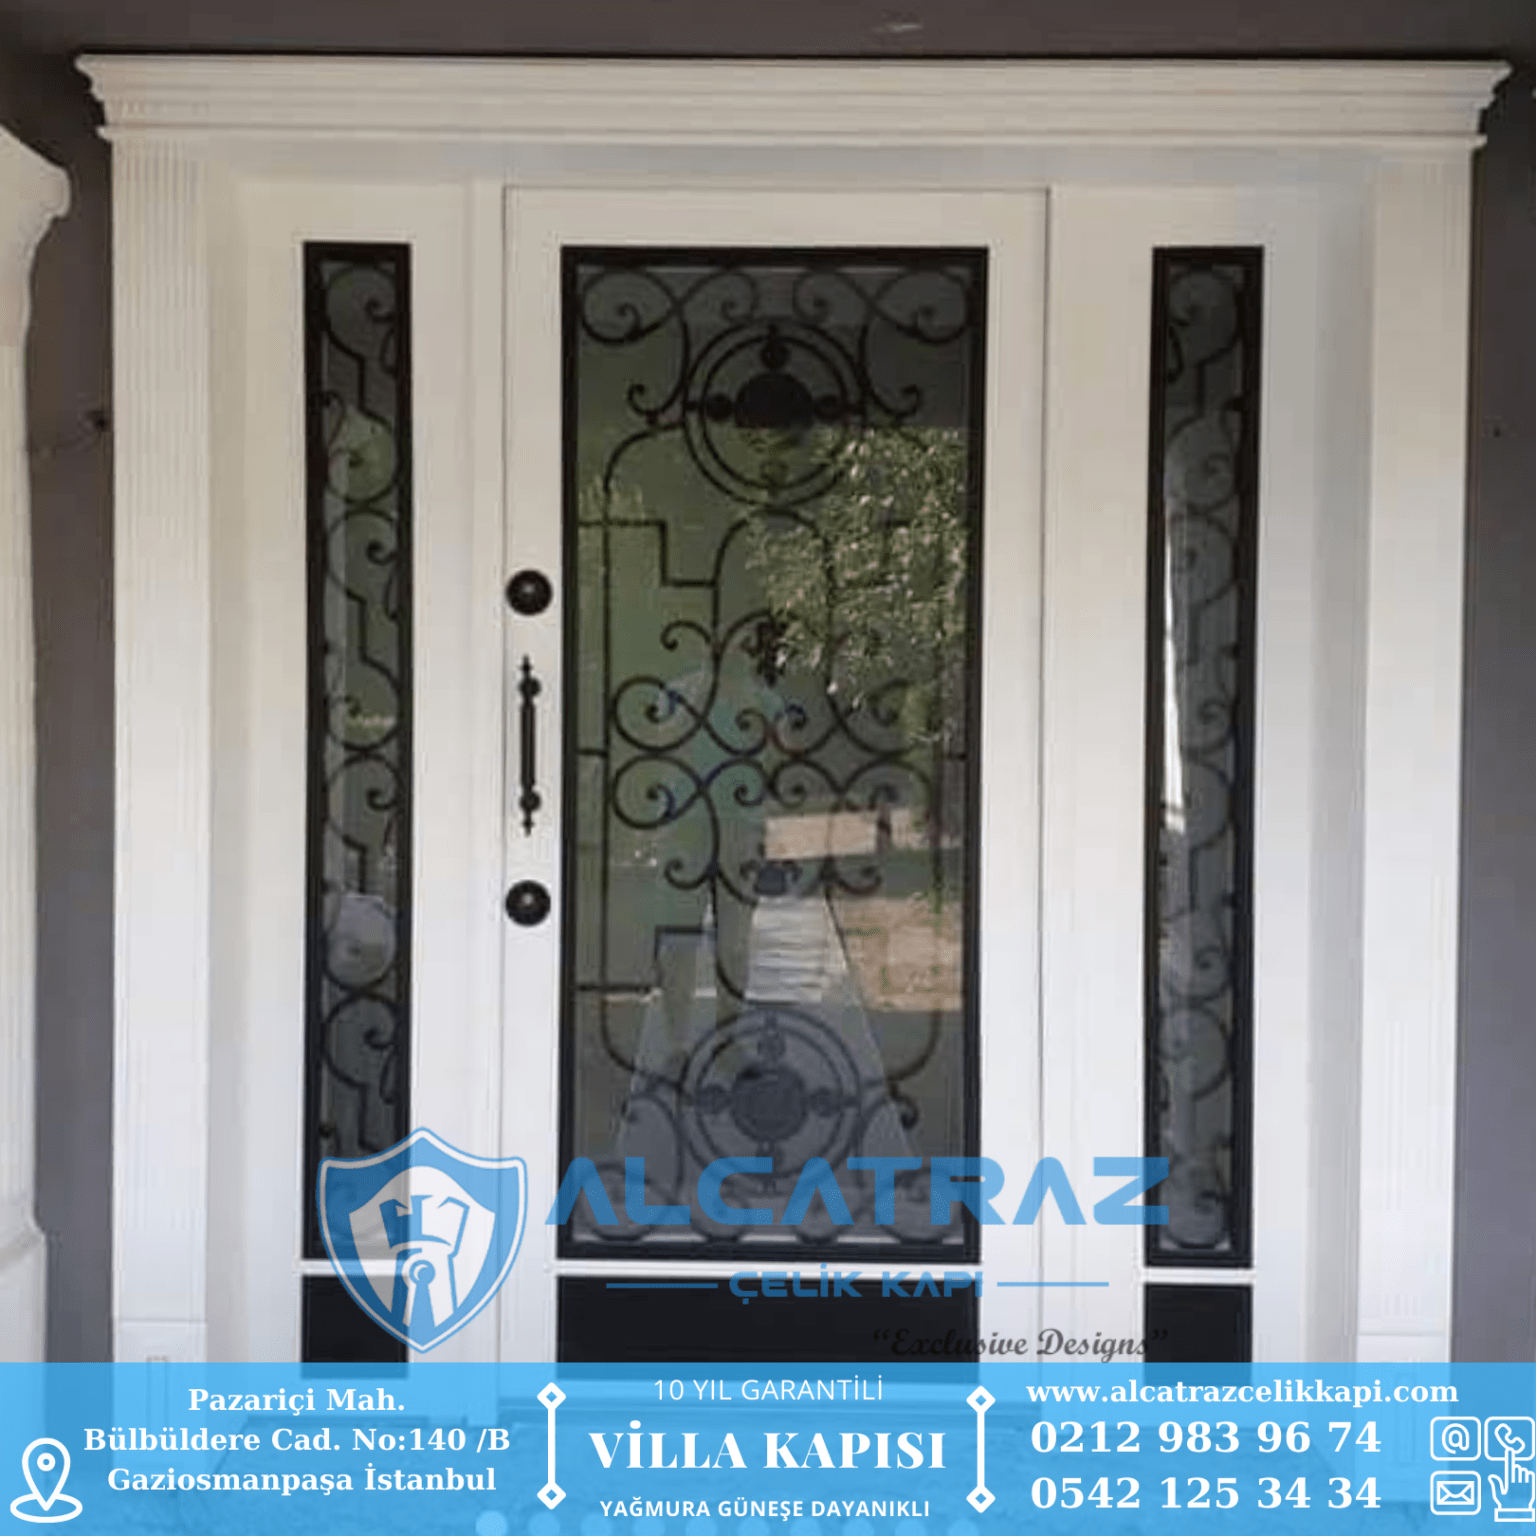 Lüks Modern Villa Kapısı Modelleri Vitray Camlı Villa Kapısı İstanbul Villa Kapısı Alcatraz Çelik Kapı İndirimli Villa Kapı Fiyatları